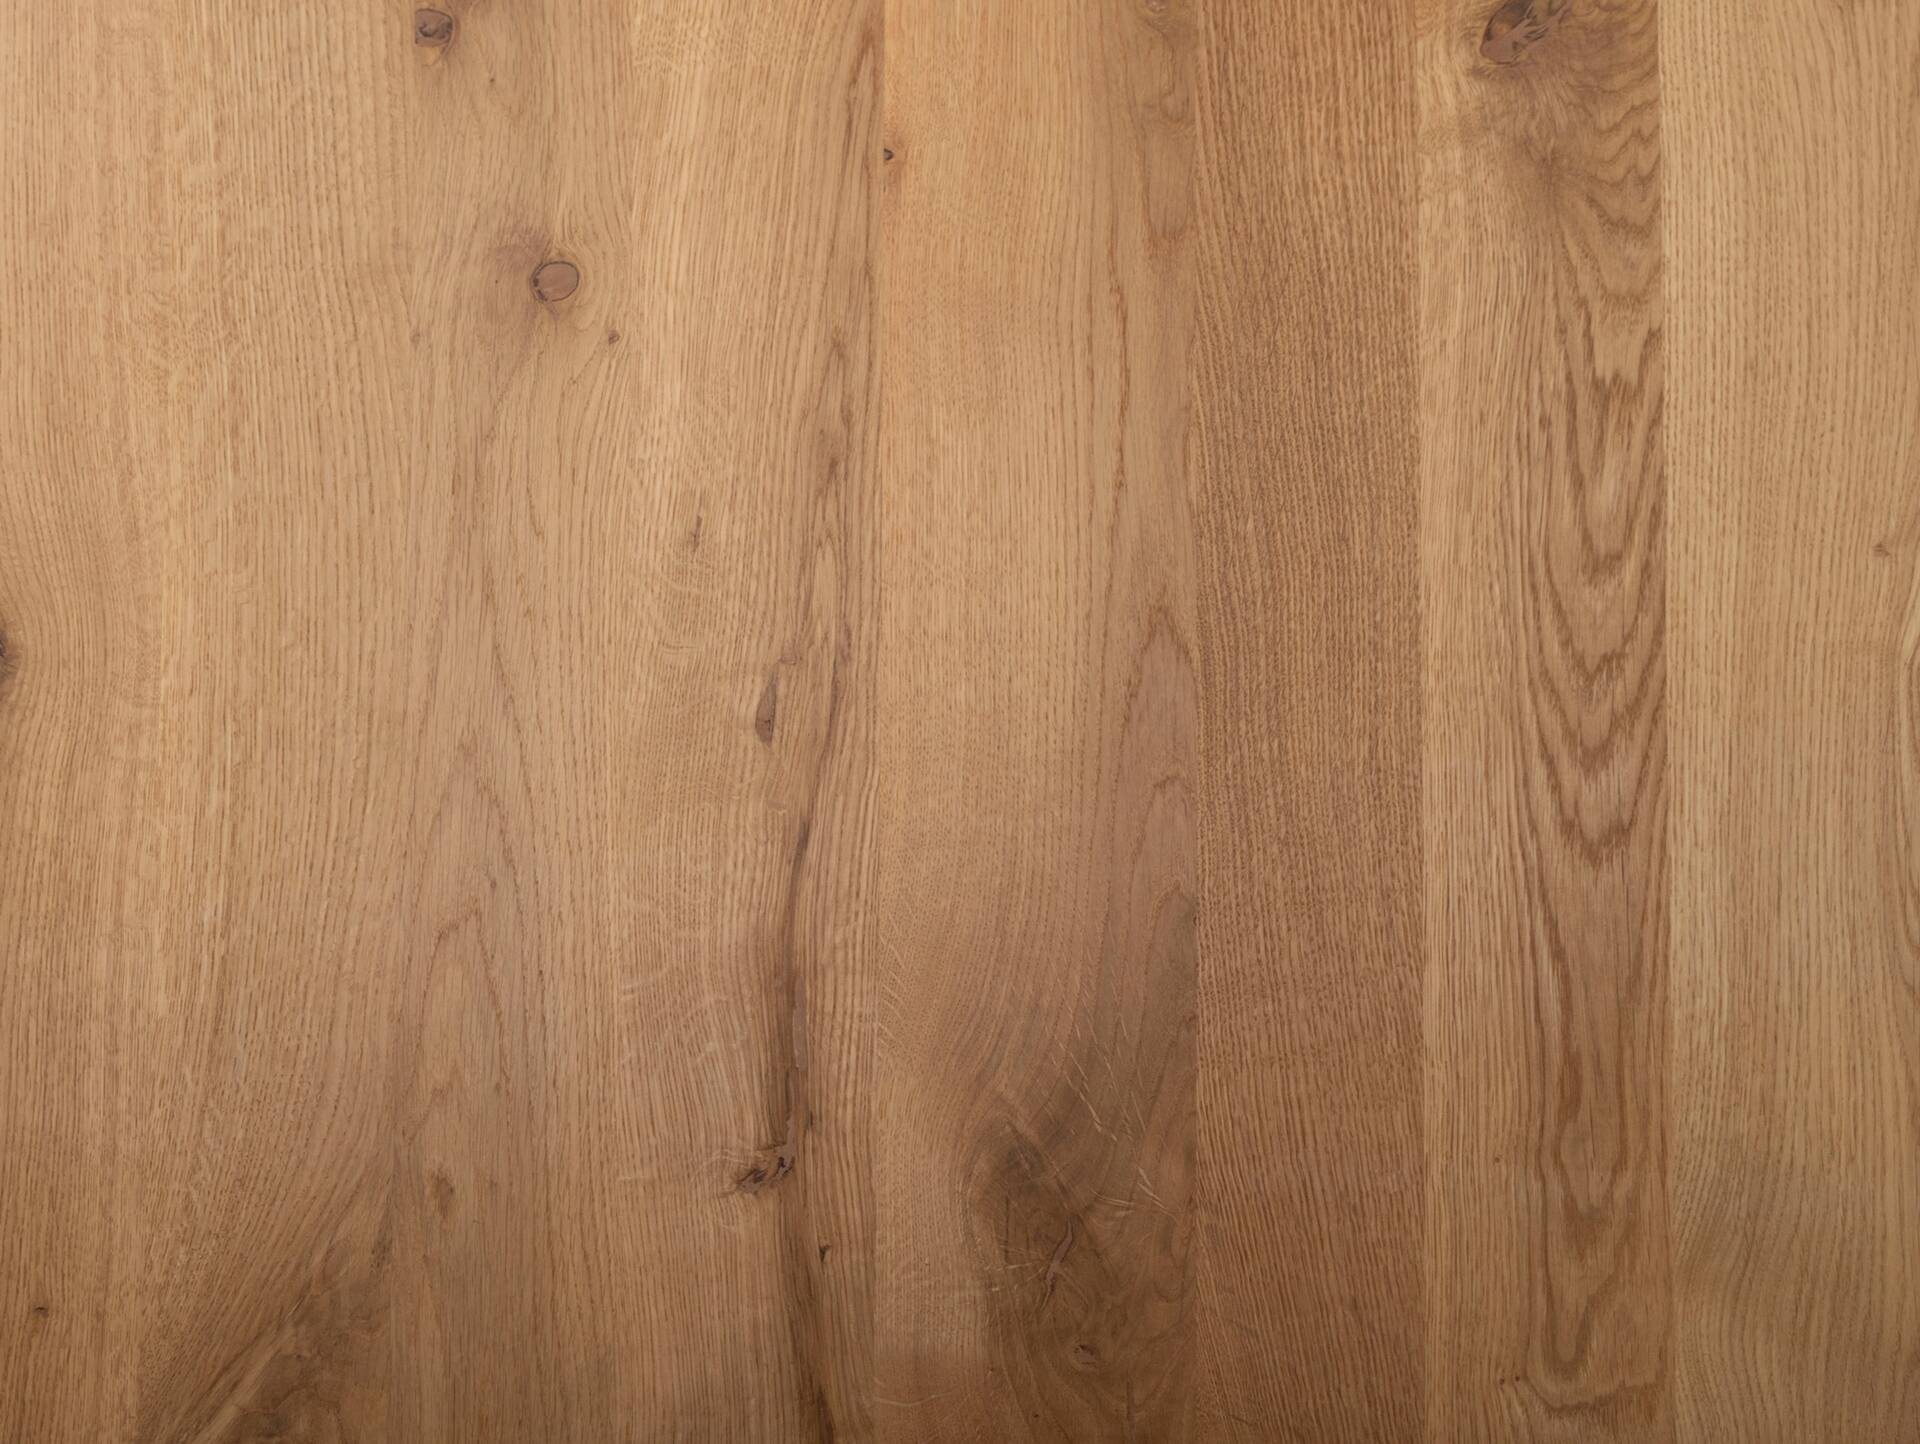 COLORADO Massivholztisch mit X-Beinen, Material Massivholz, Eiche 250 x 100 cm